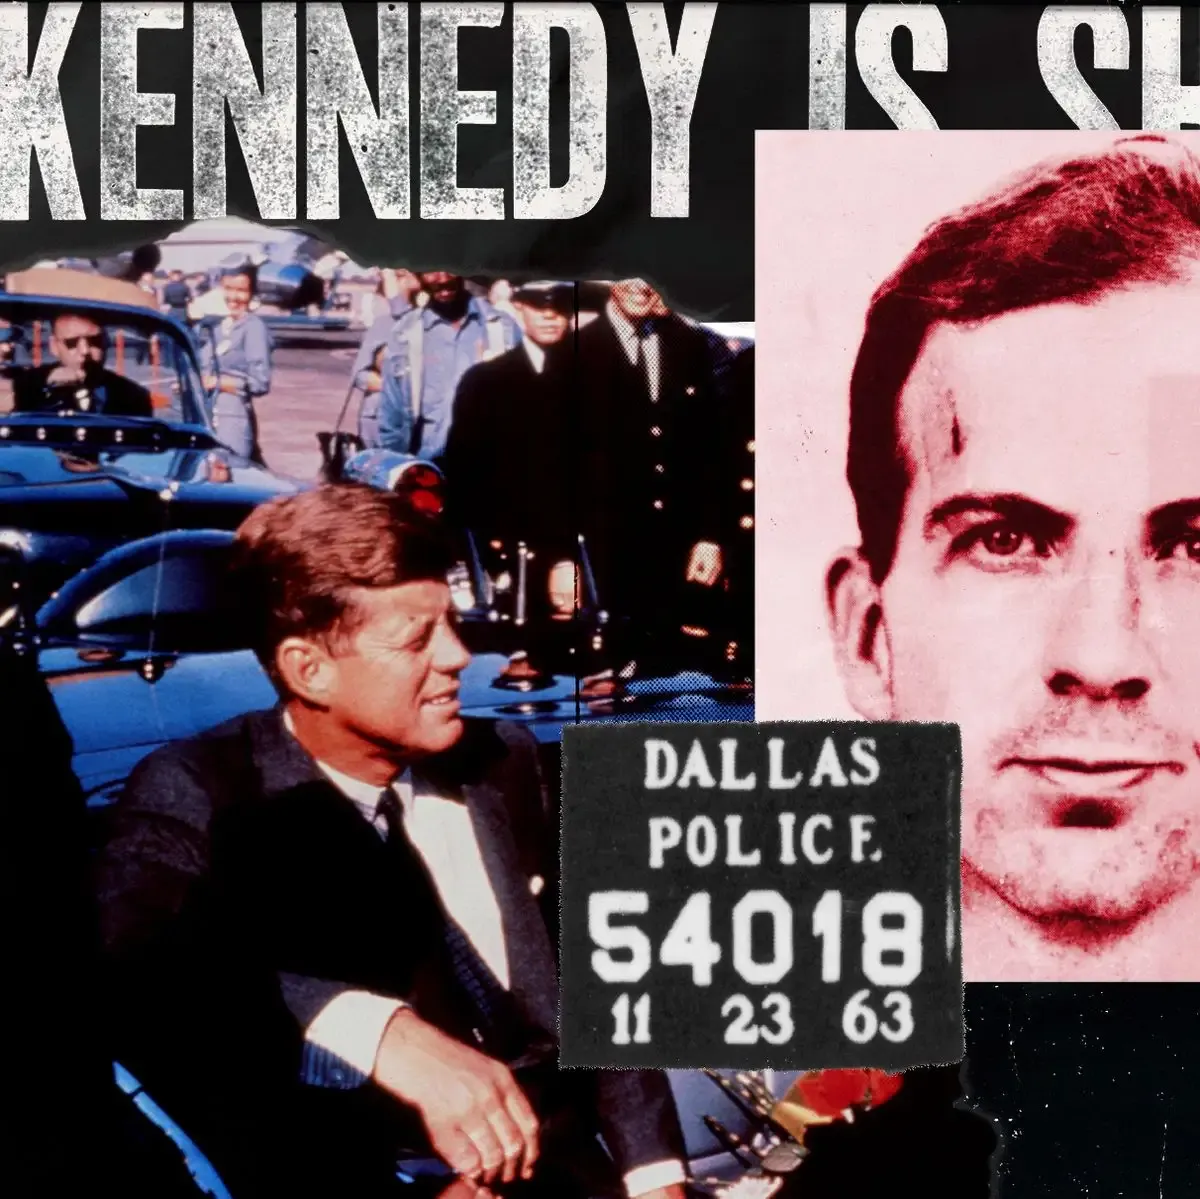 من قتل حقا جون كنيدي؟ بعد 60 عامًا وأدلة جديدة، تبدو الحقيقة مختلفة